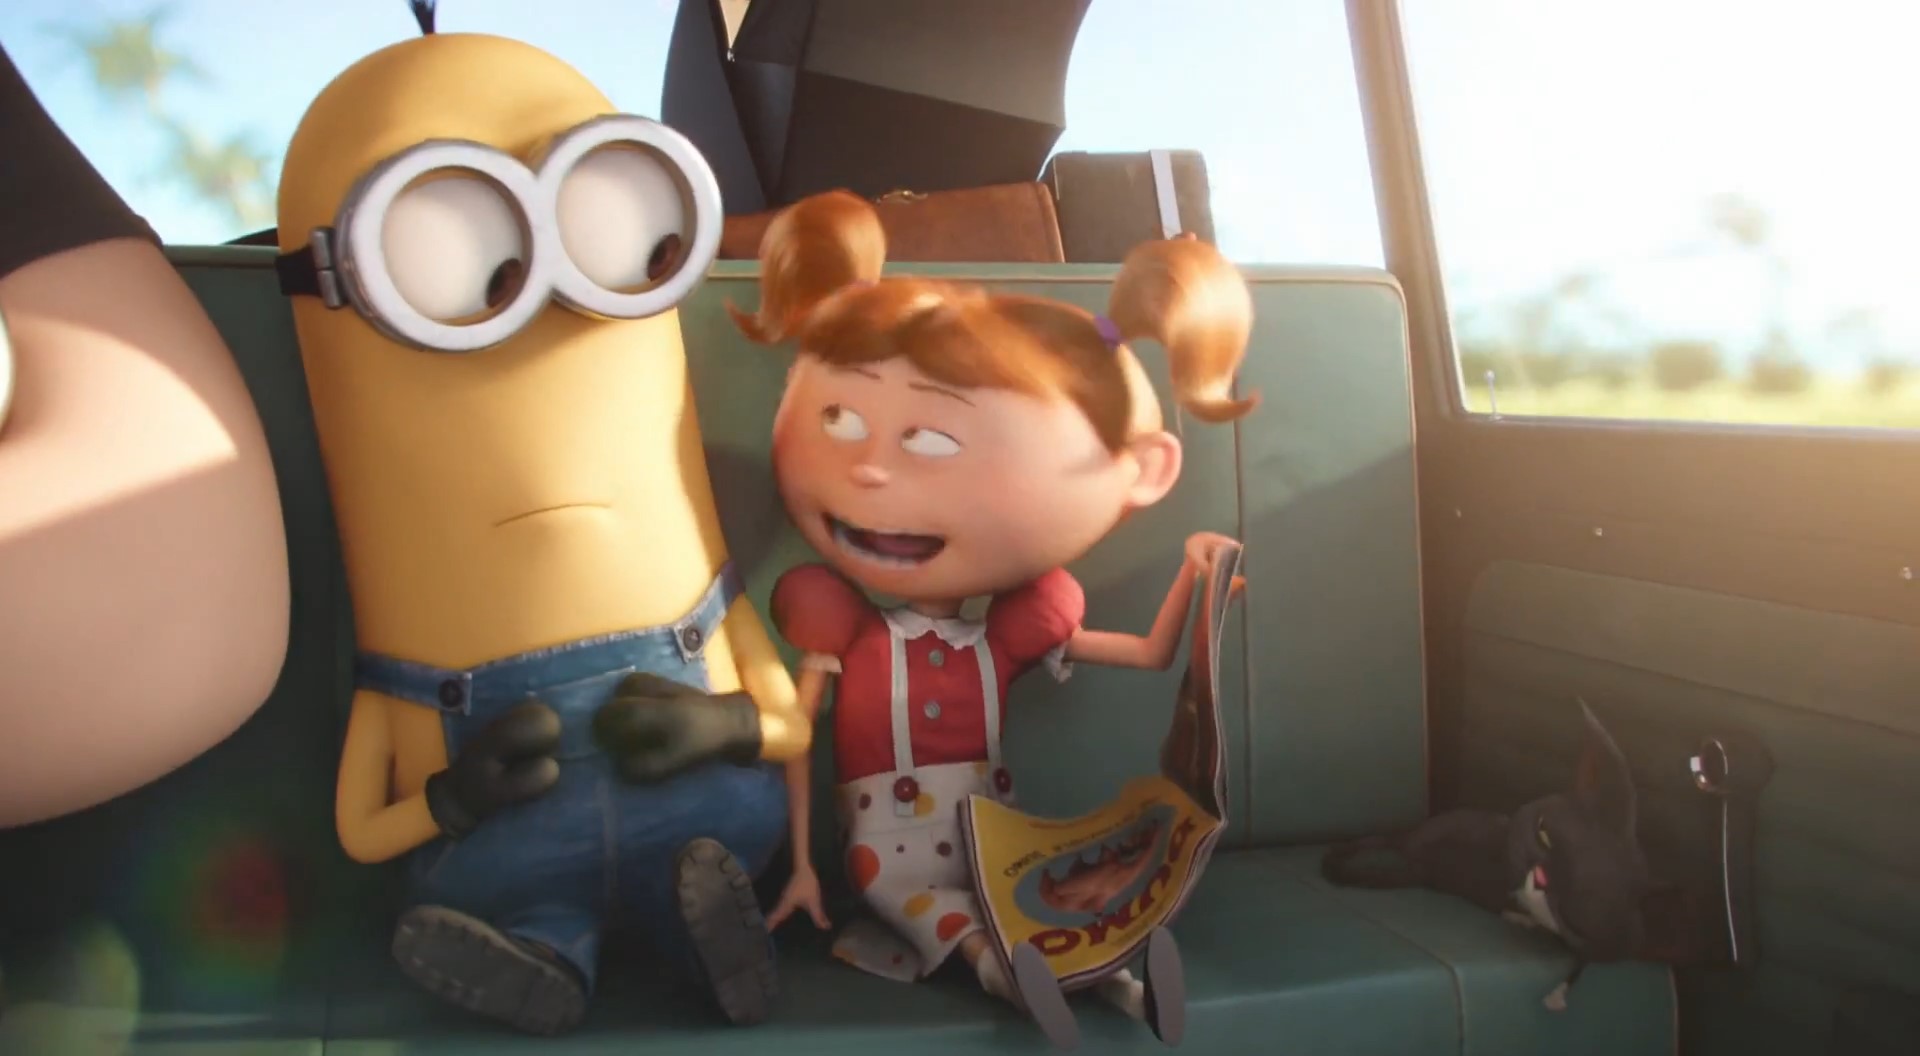 Phim hoạt hình Minions chính thức tung trailer mới cực hài hước